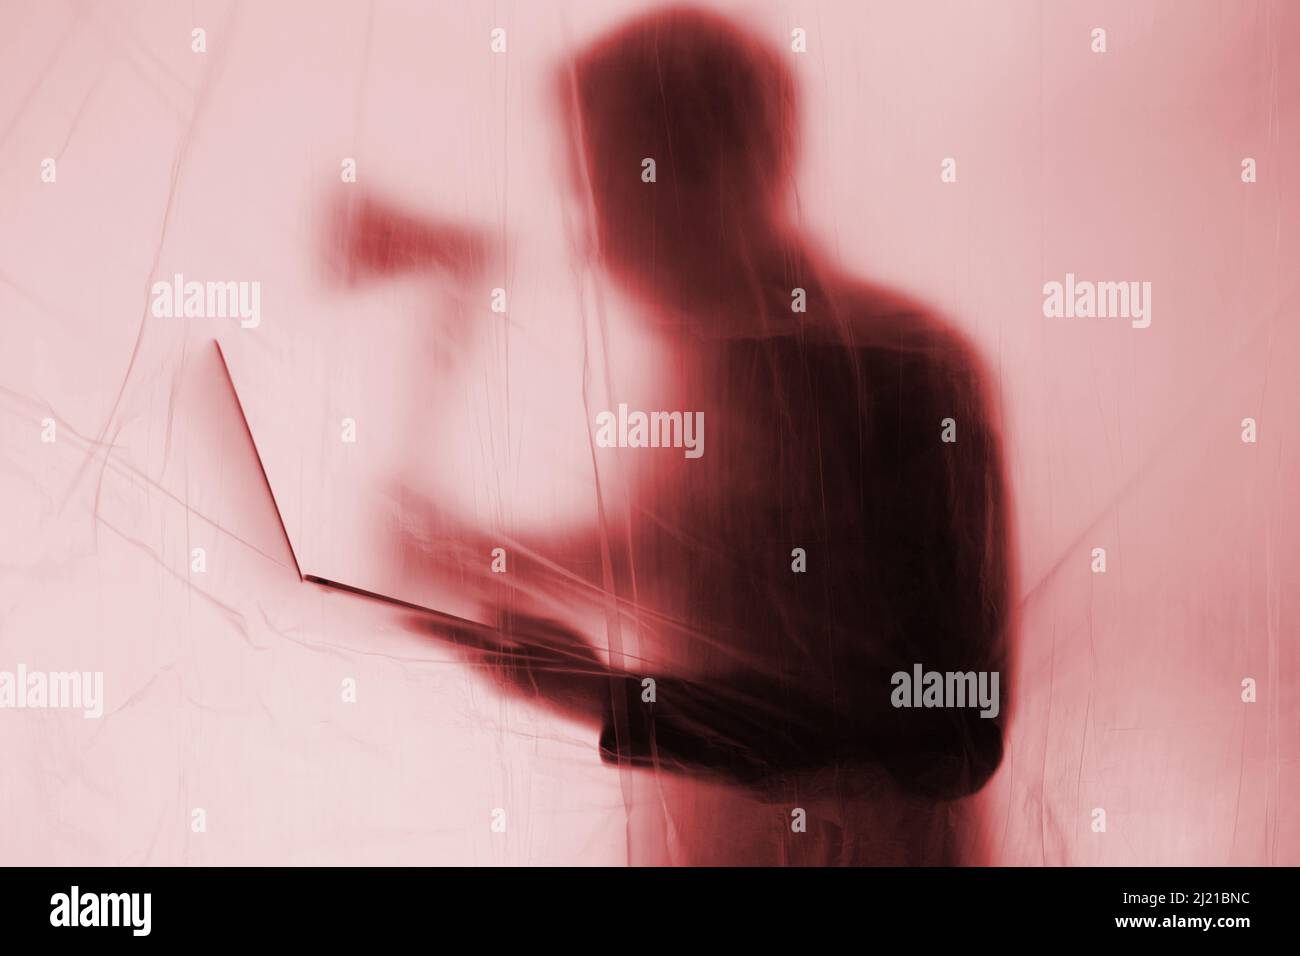 Anonyme Hacker commet la cybercriminalité avec ordinateur portable en main. Une hache est retenue pour symboliser l'intrusion de force de systèmes INFORMATIQUES pour exploiter. Banque D'Images